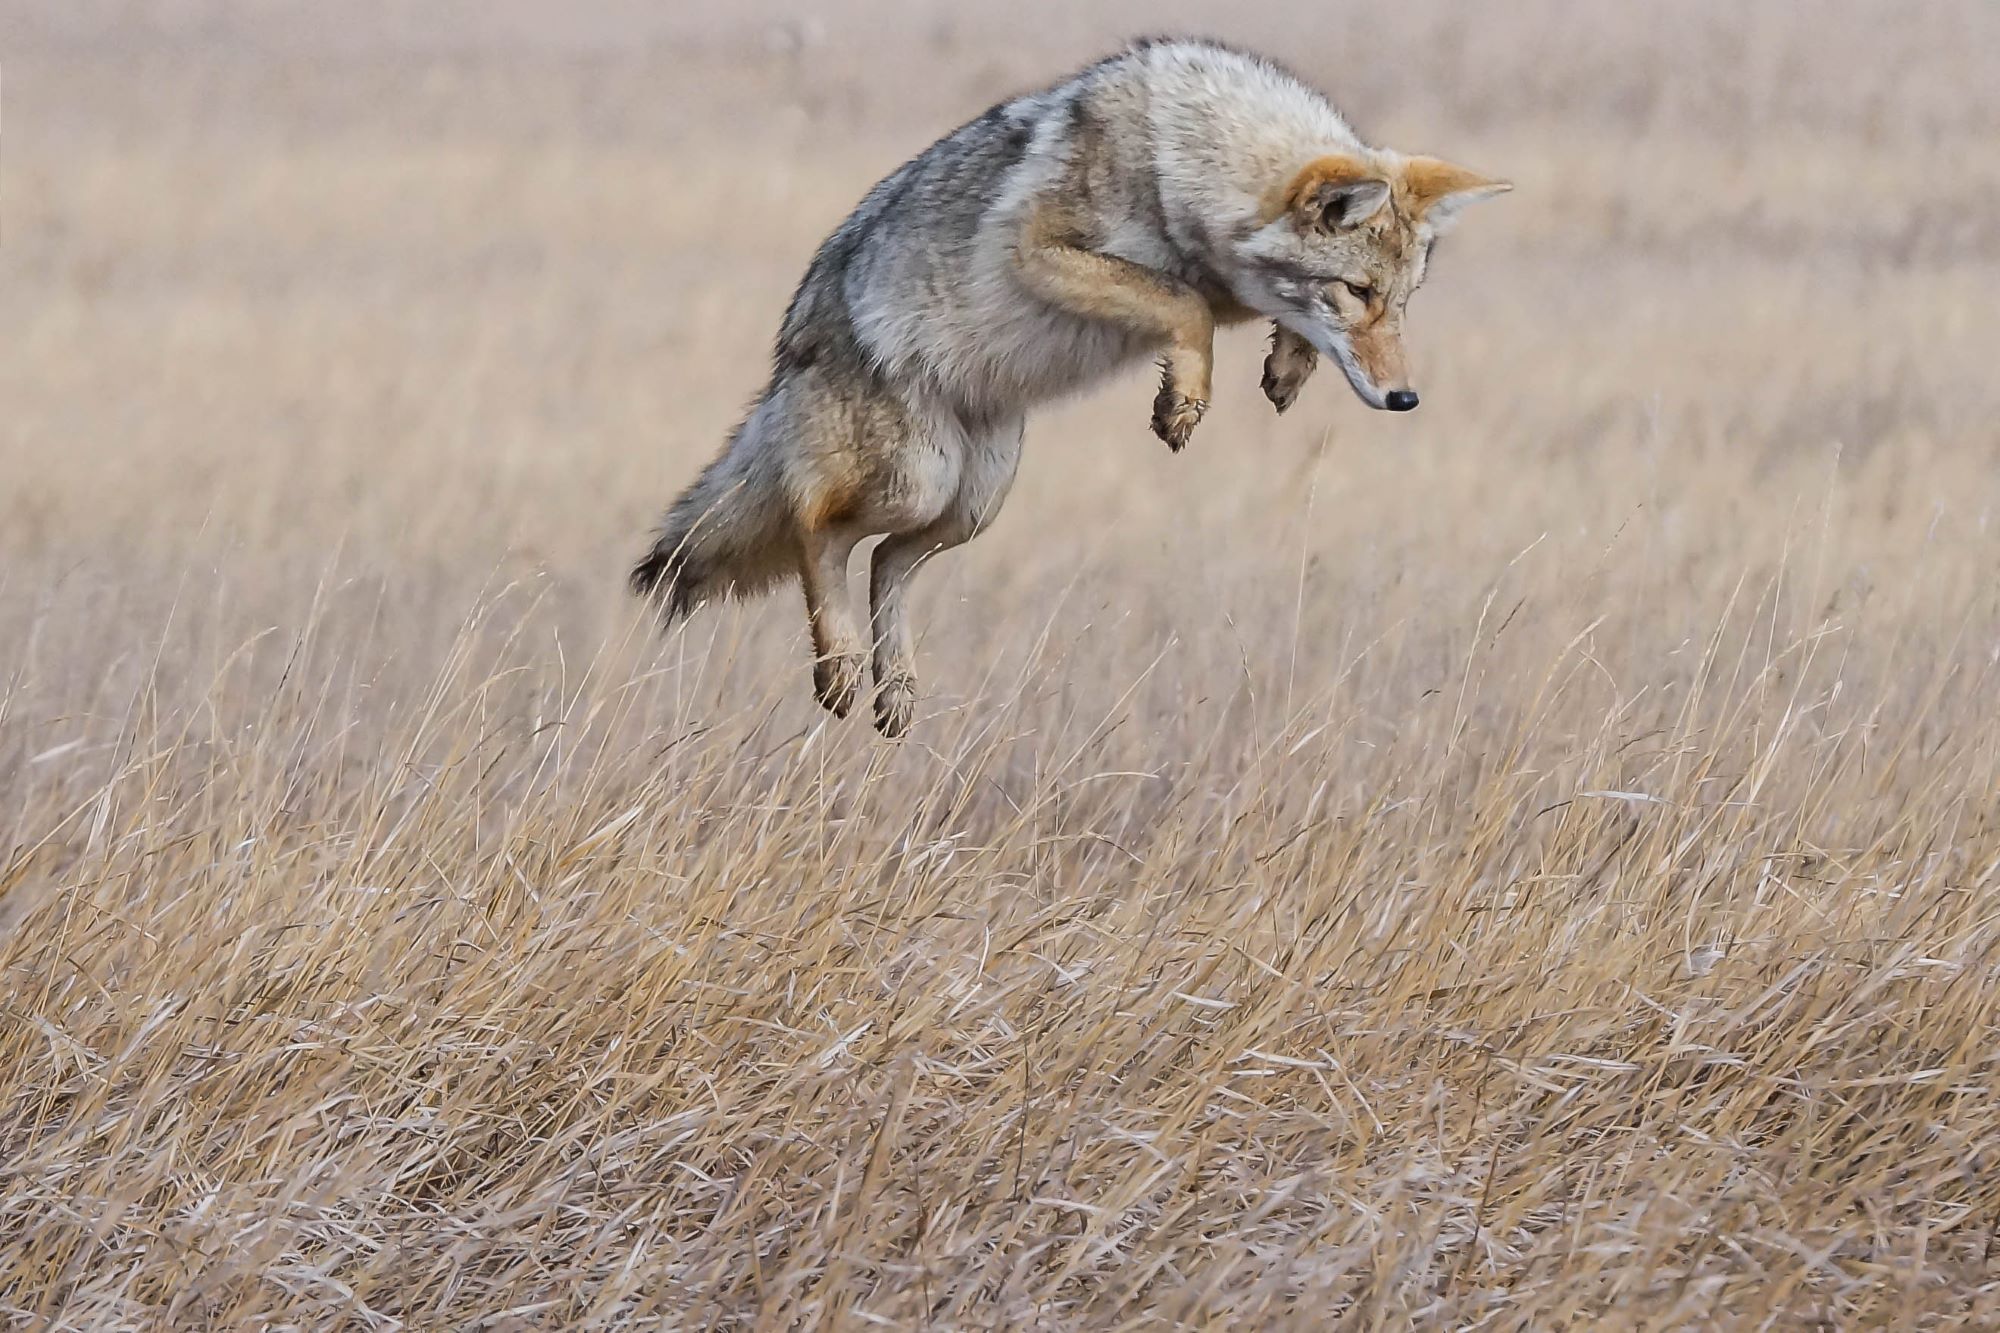 A coyote in Utah.